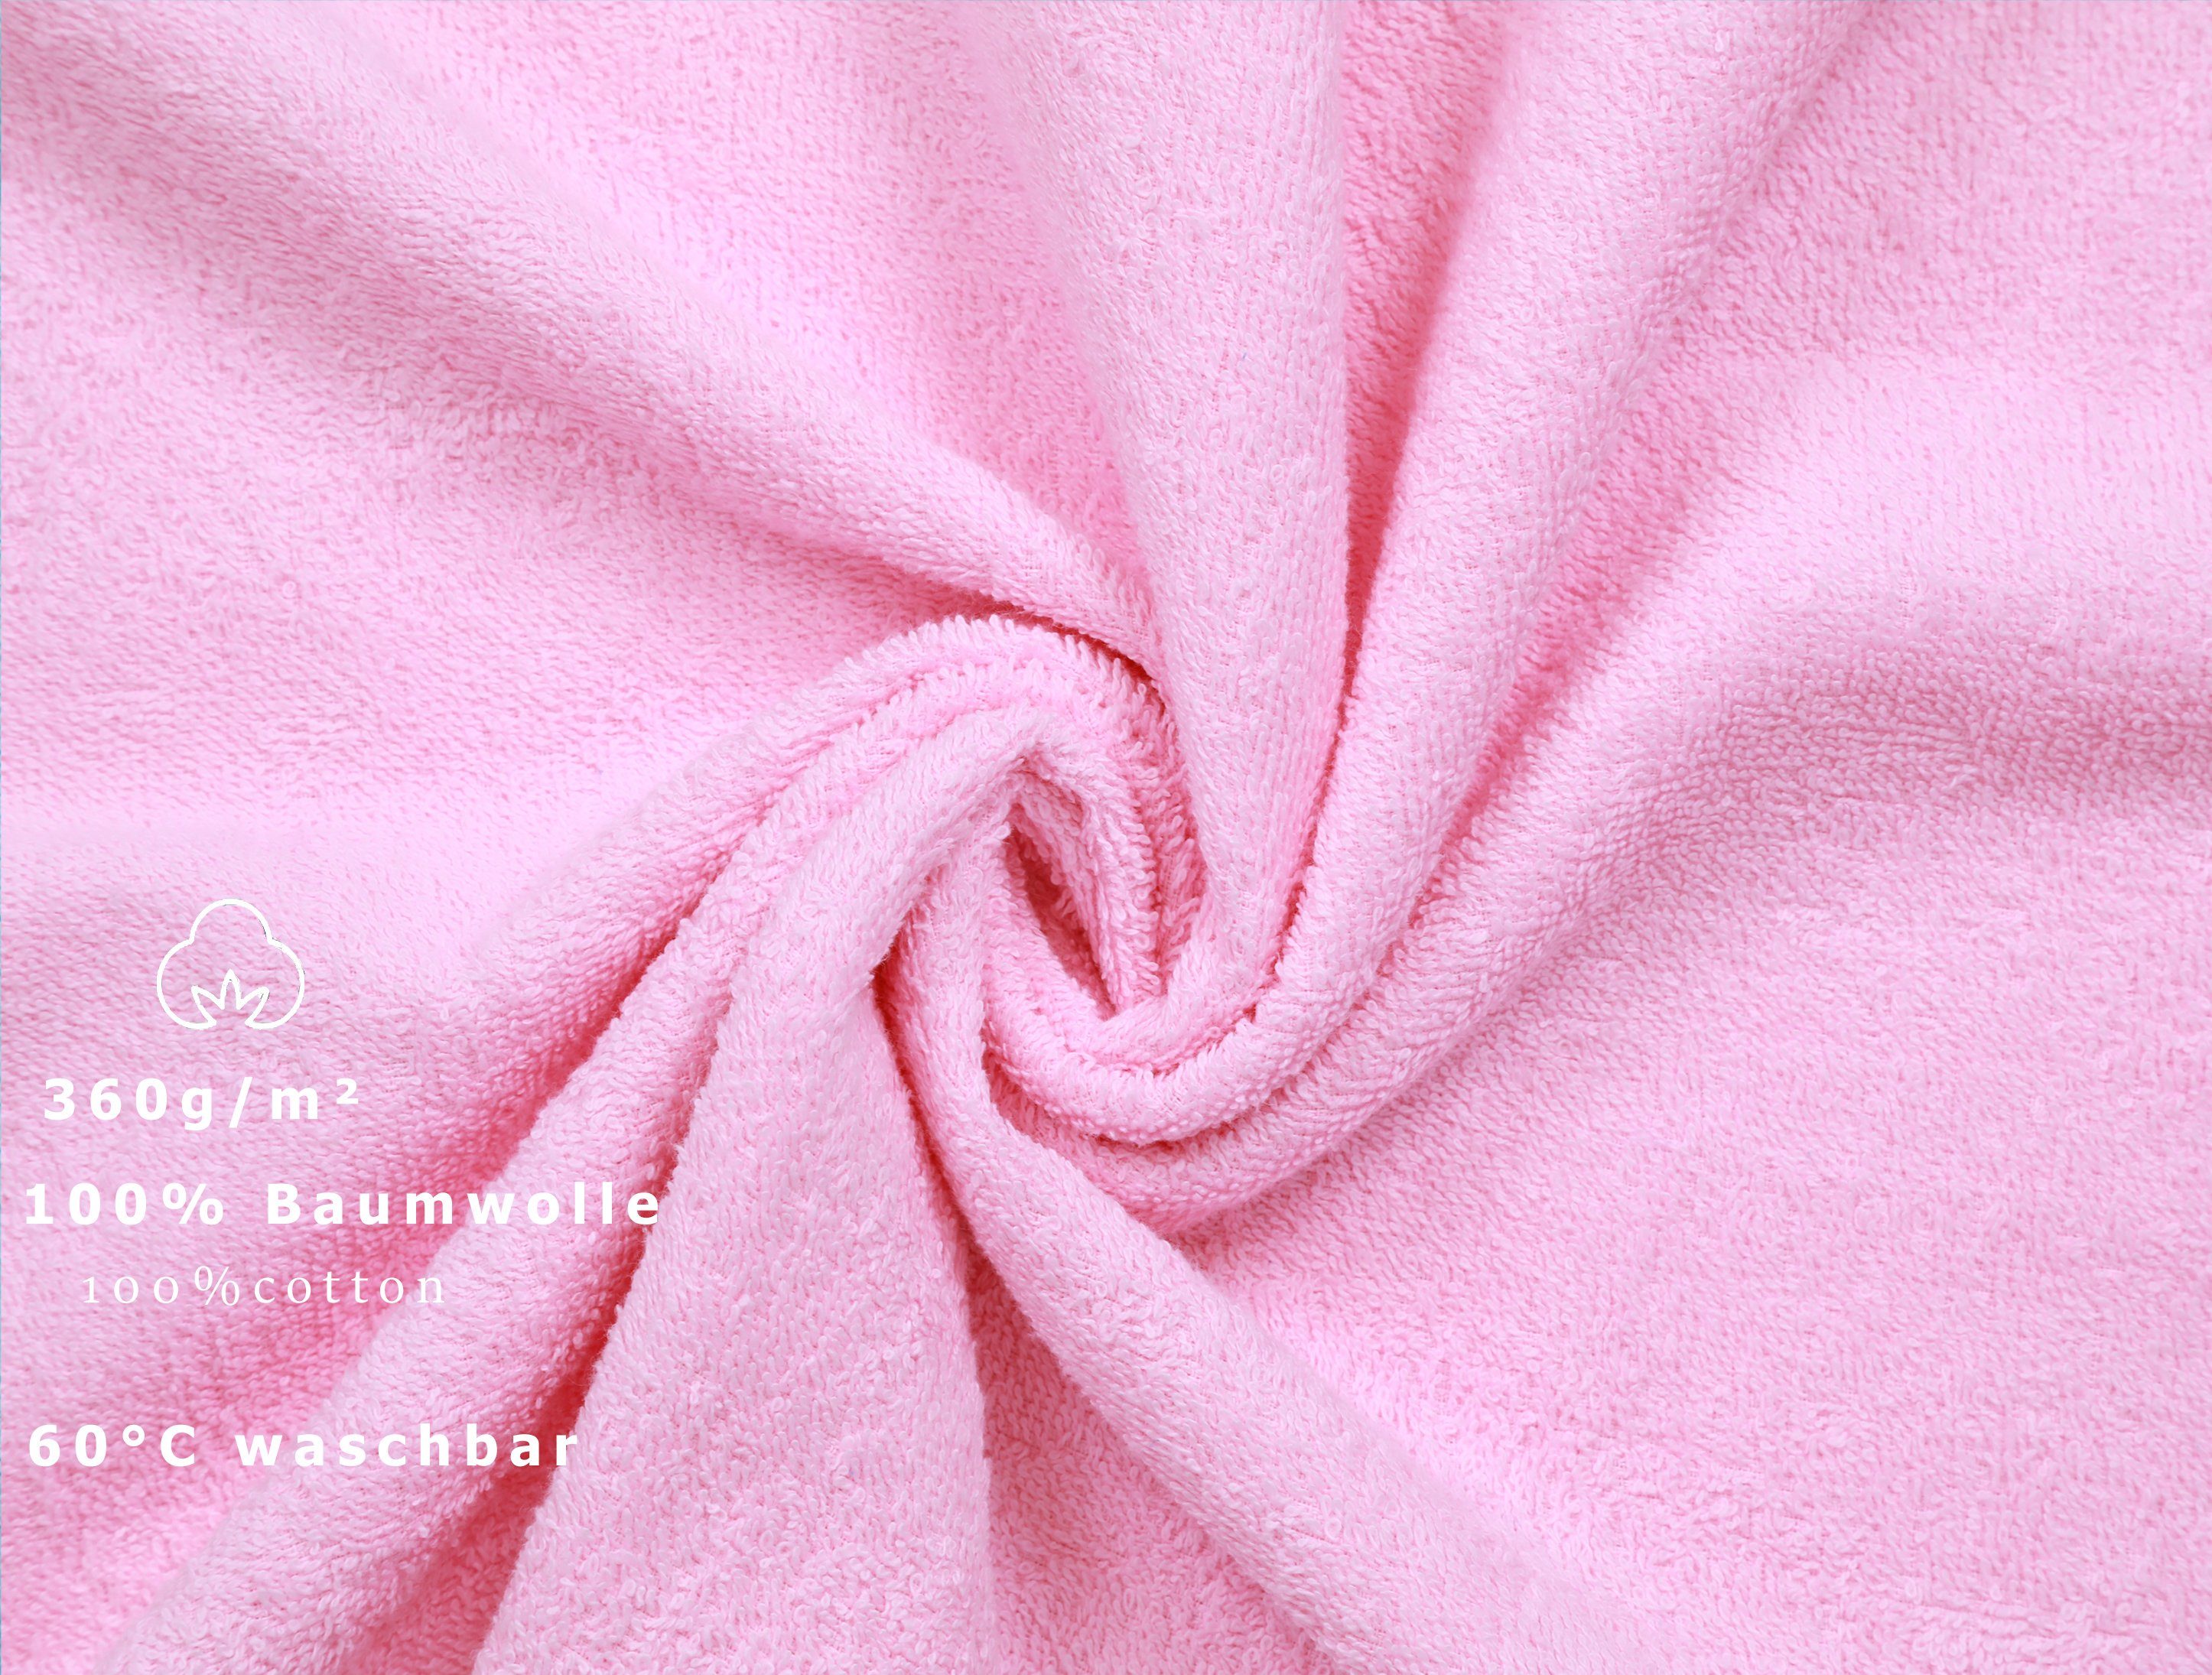 Betz Handtücher 6 tlg. und Größe türkis, 50x100 Baumwolle Farbe Set 100% rosé Handtuch Palermo